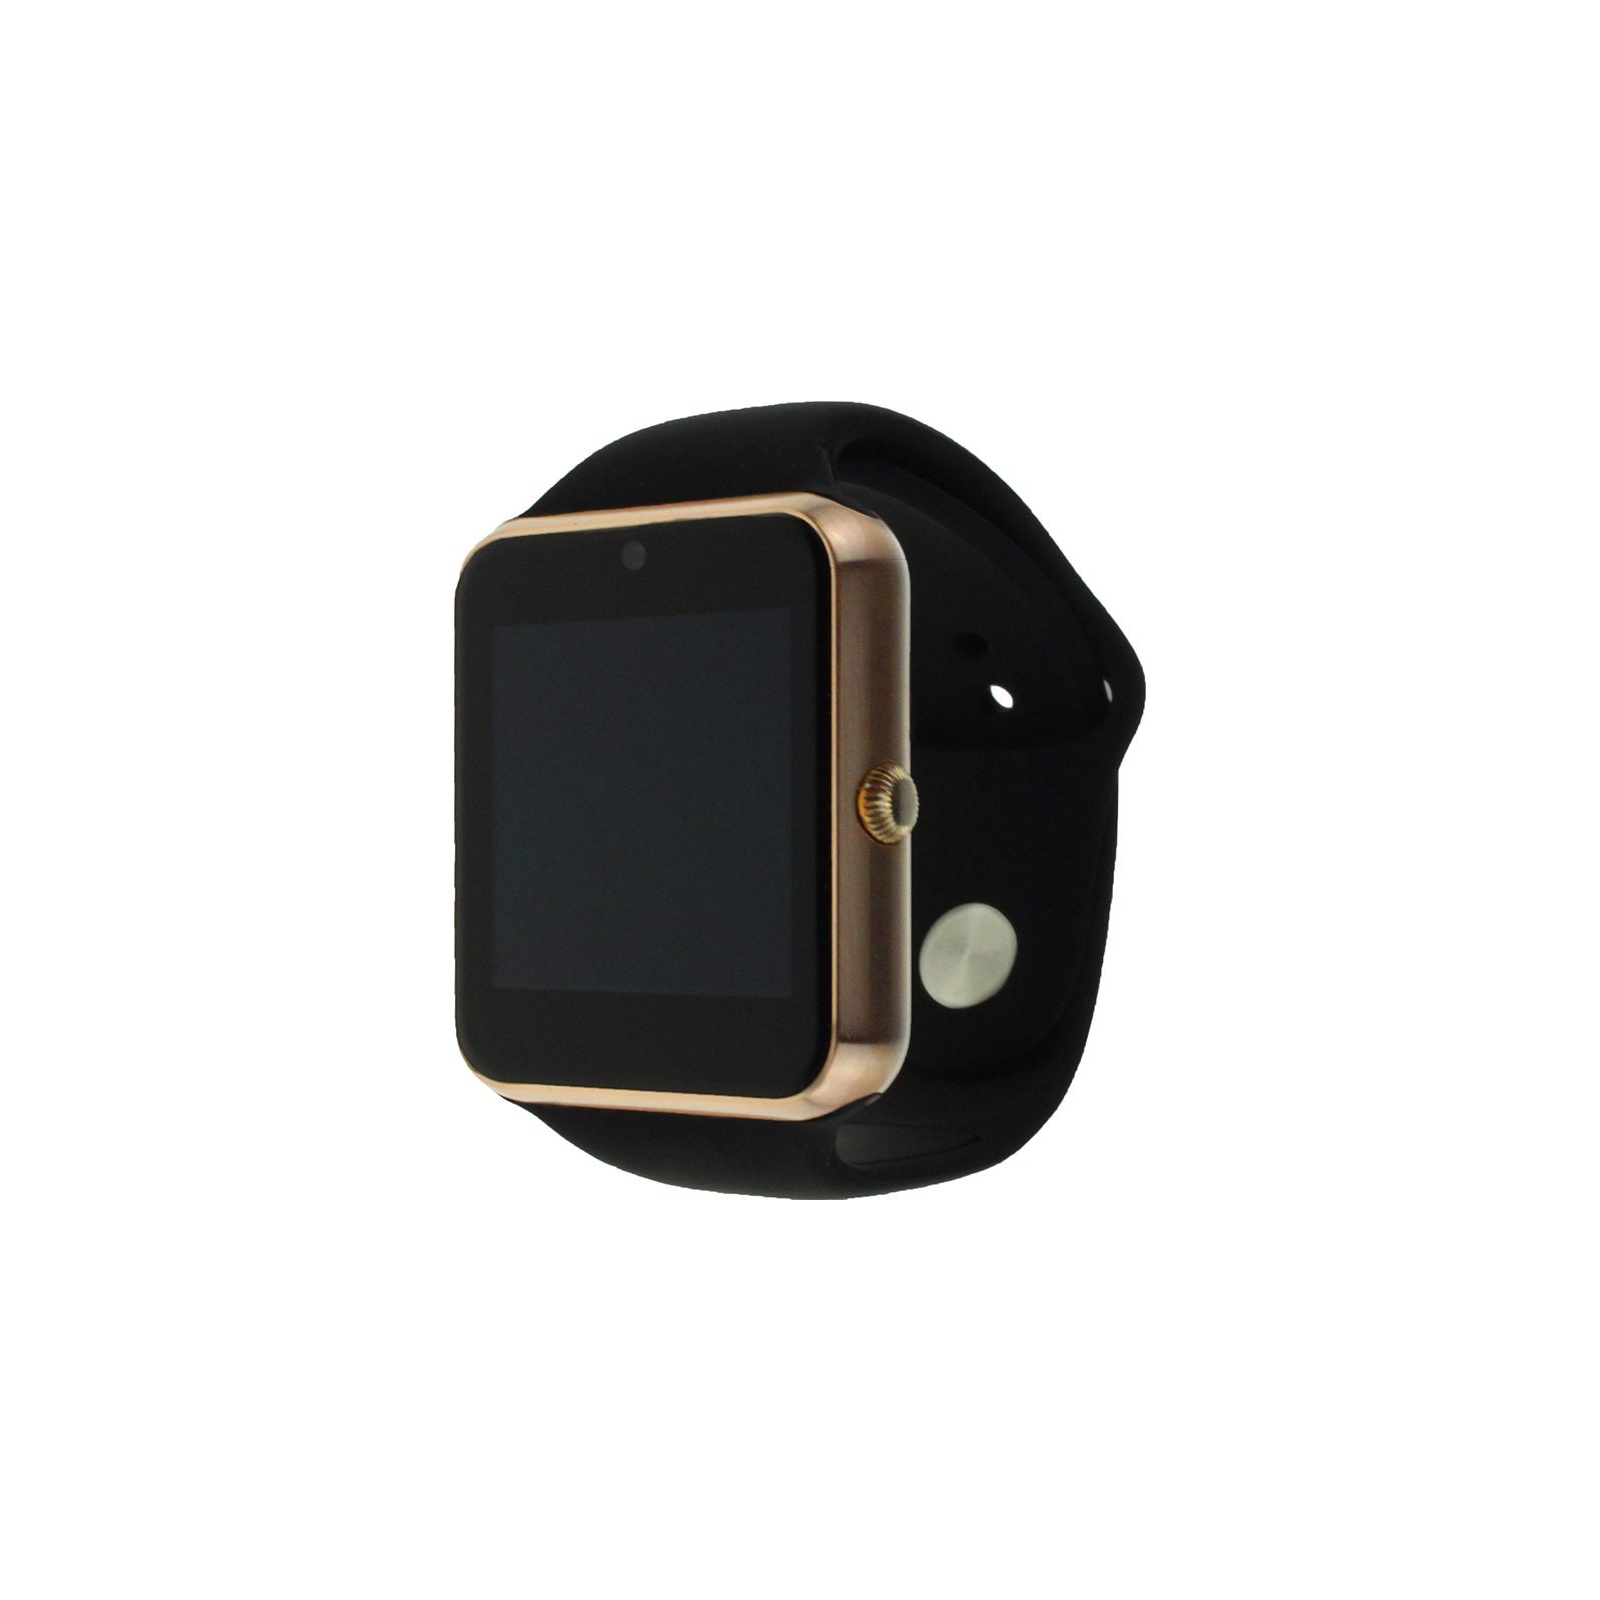 Смарт-часы UWatch Q7S Gold (F_59050)